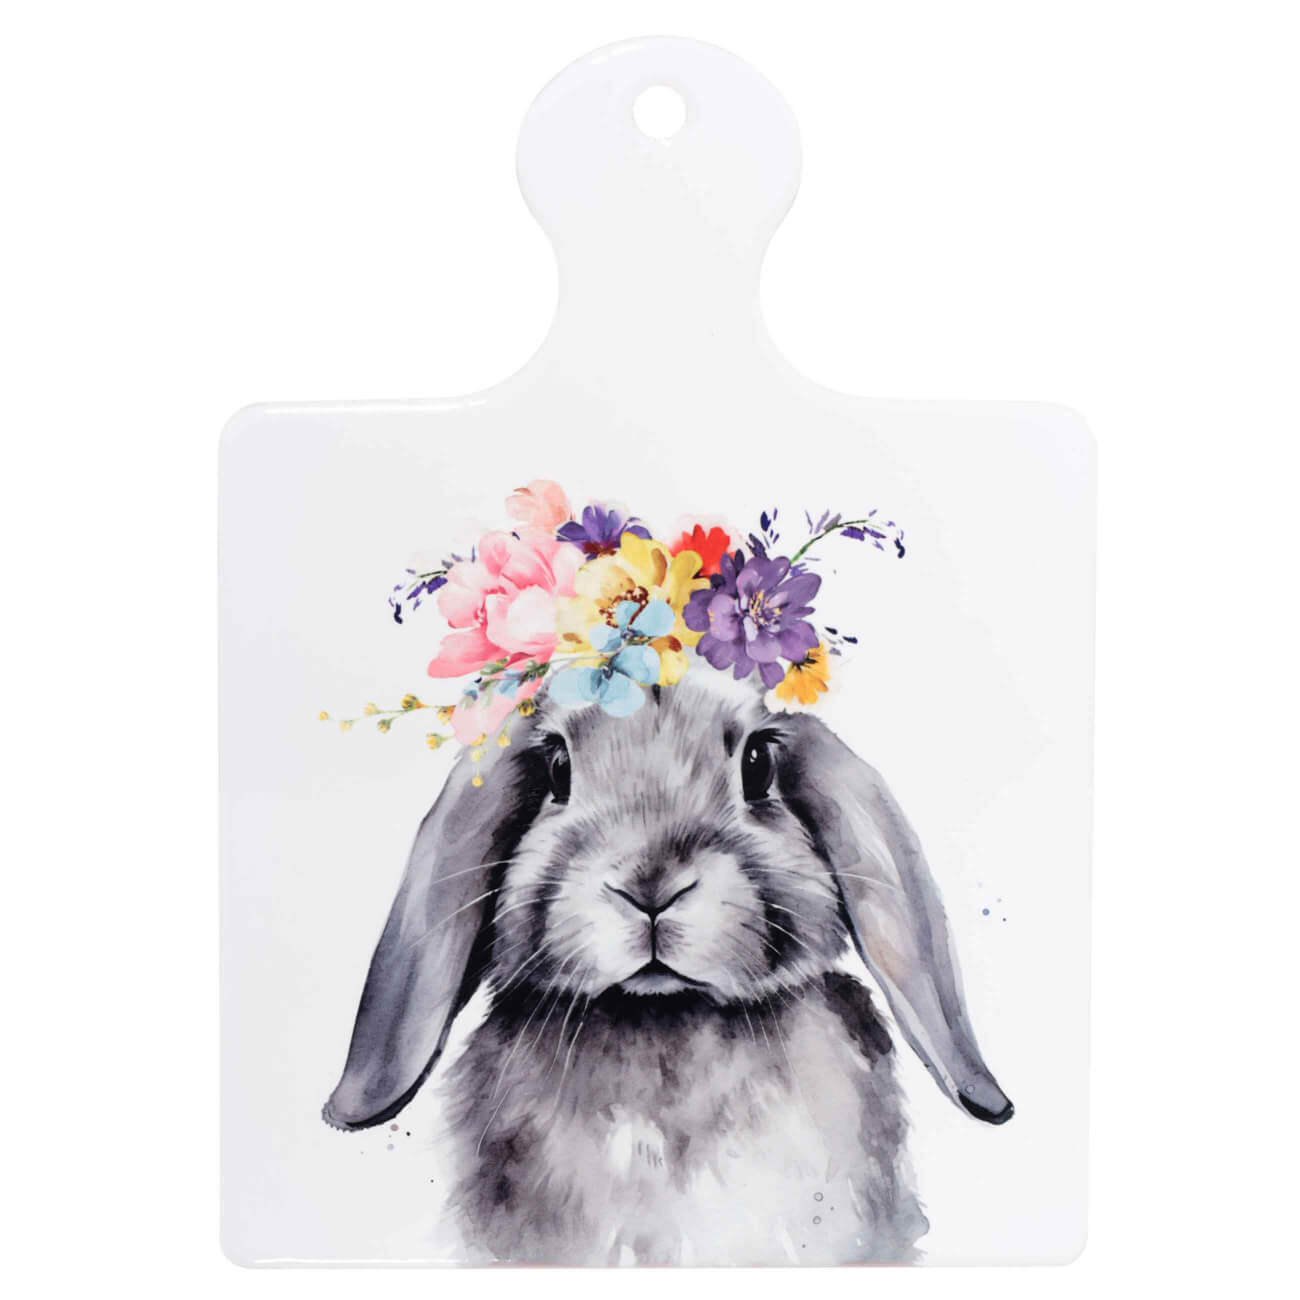 Подставка под горячее, 17x24 см, с ручкой, керамика/пробка, белая, Кролик, Pure Easter изображение № 1